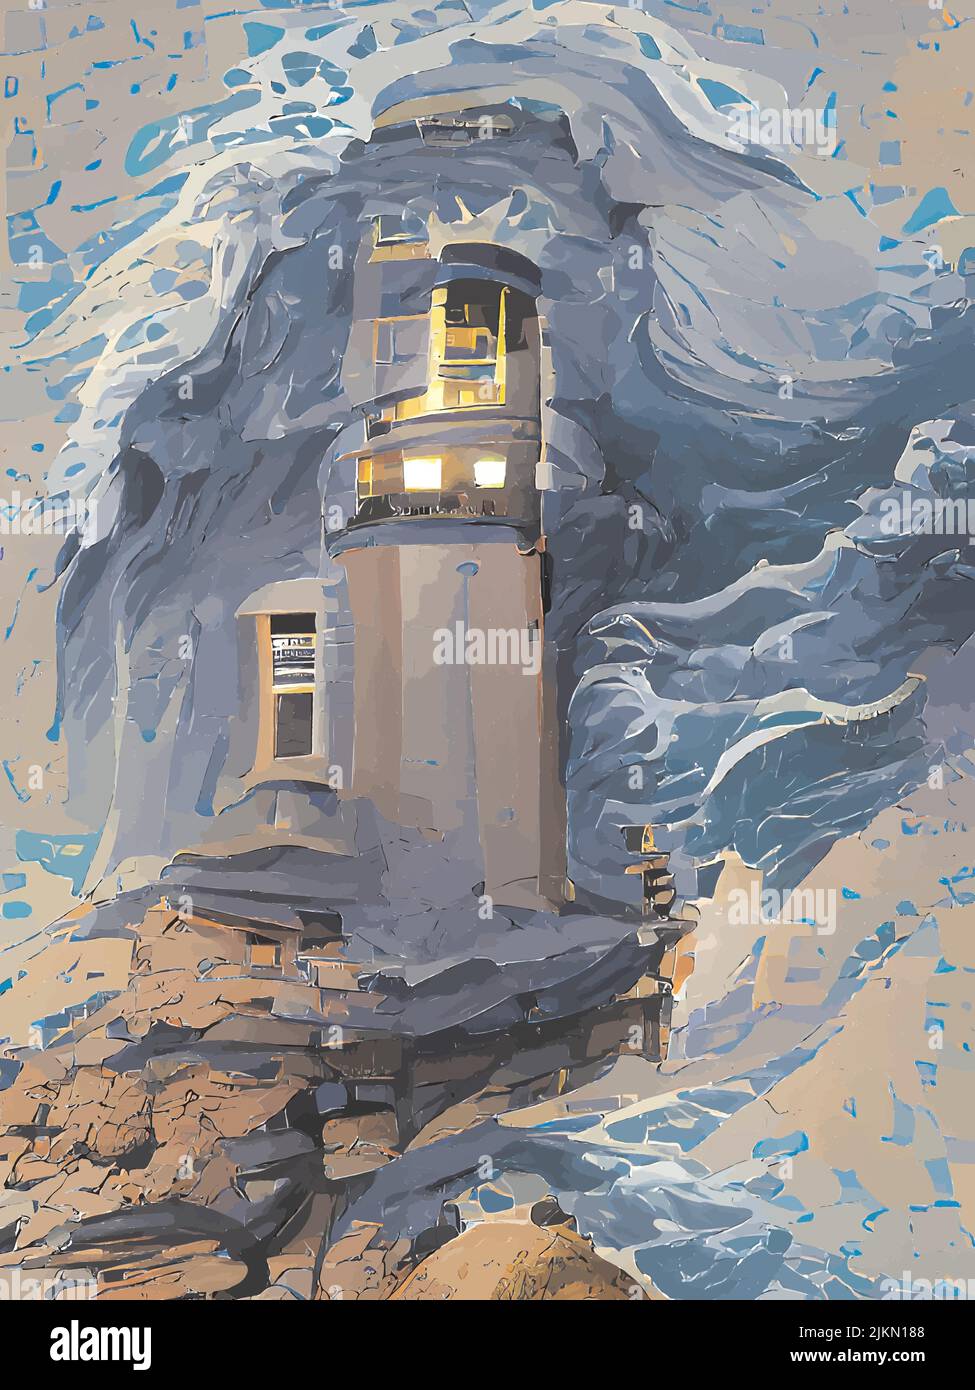 peinture numérique des phares dans la mer Illustration de Vecteur